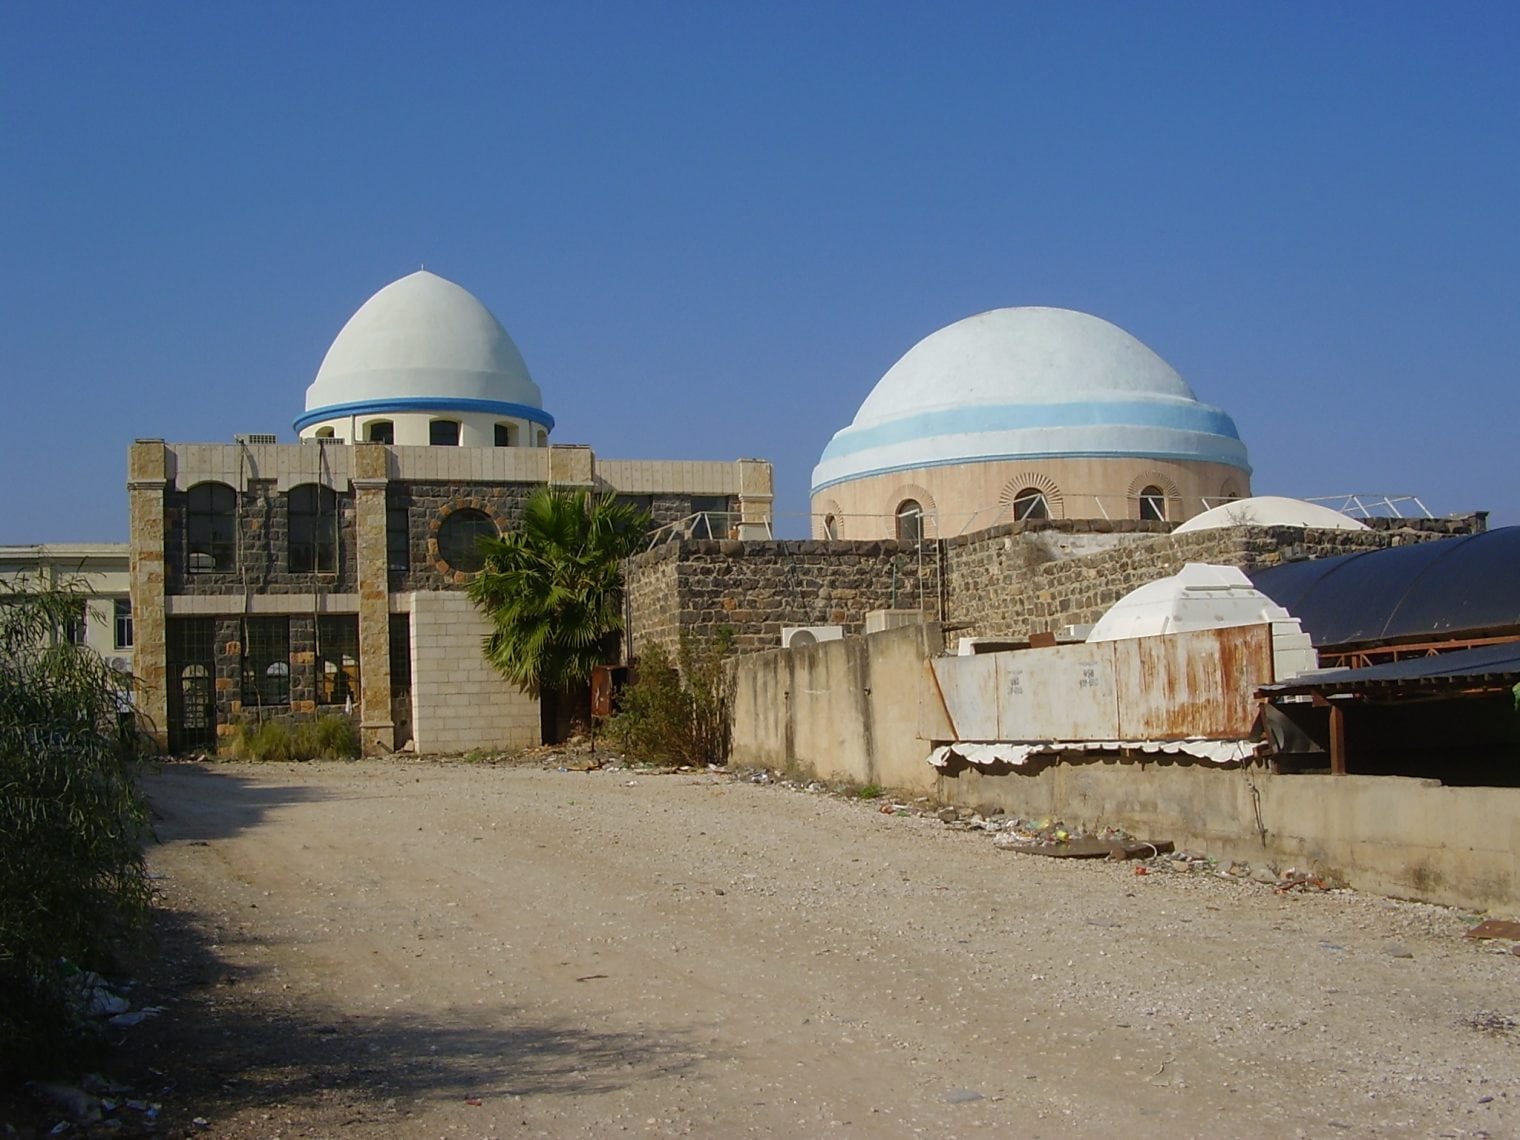 קבר רבי מאיר בטבריה (צילום: ד"ר אבישי טייכר, Creative Commons)